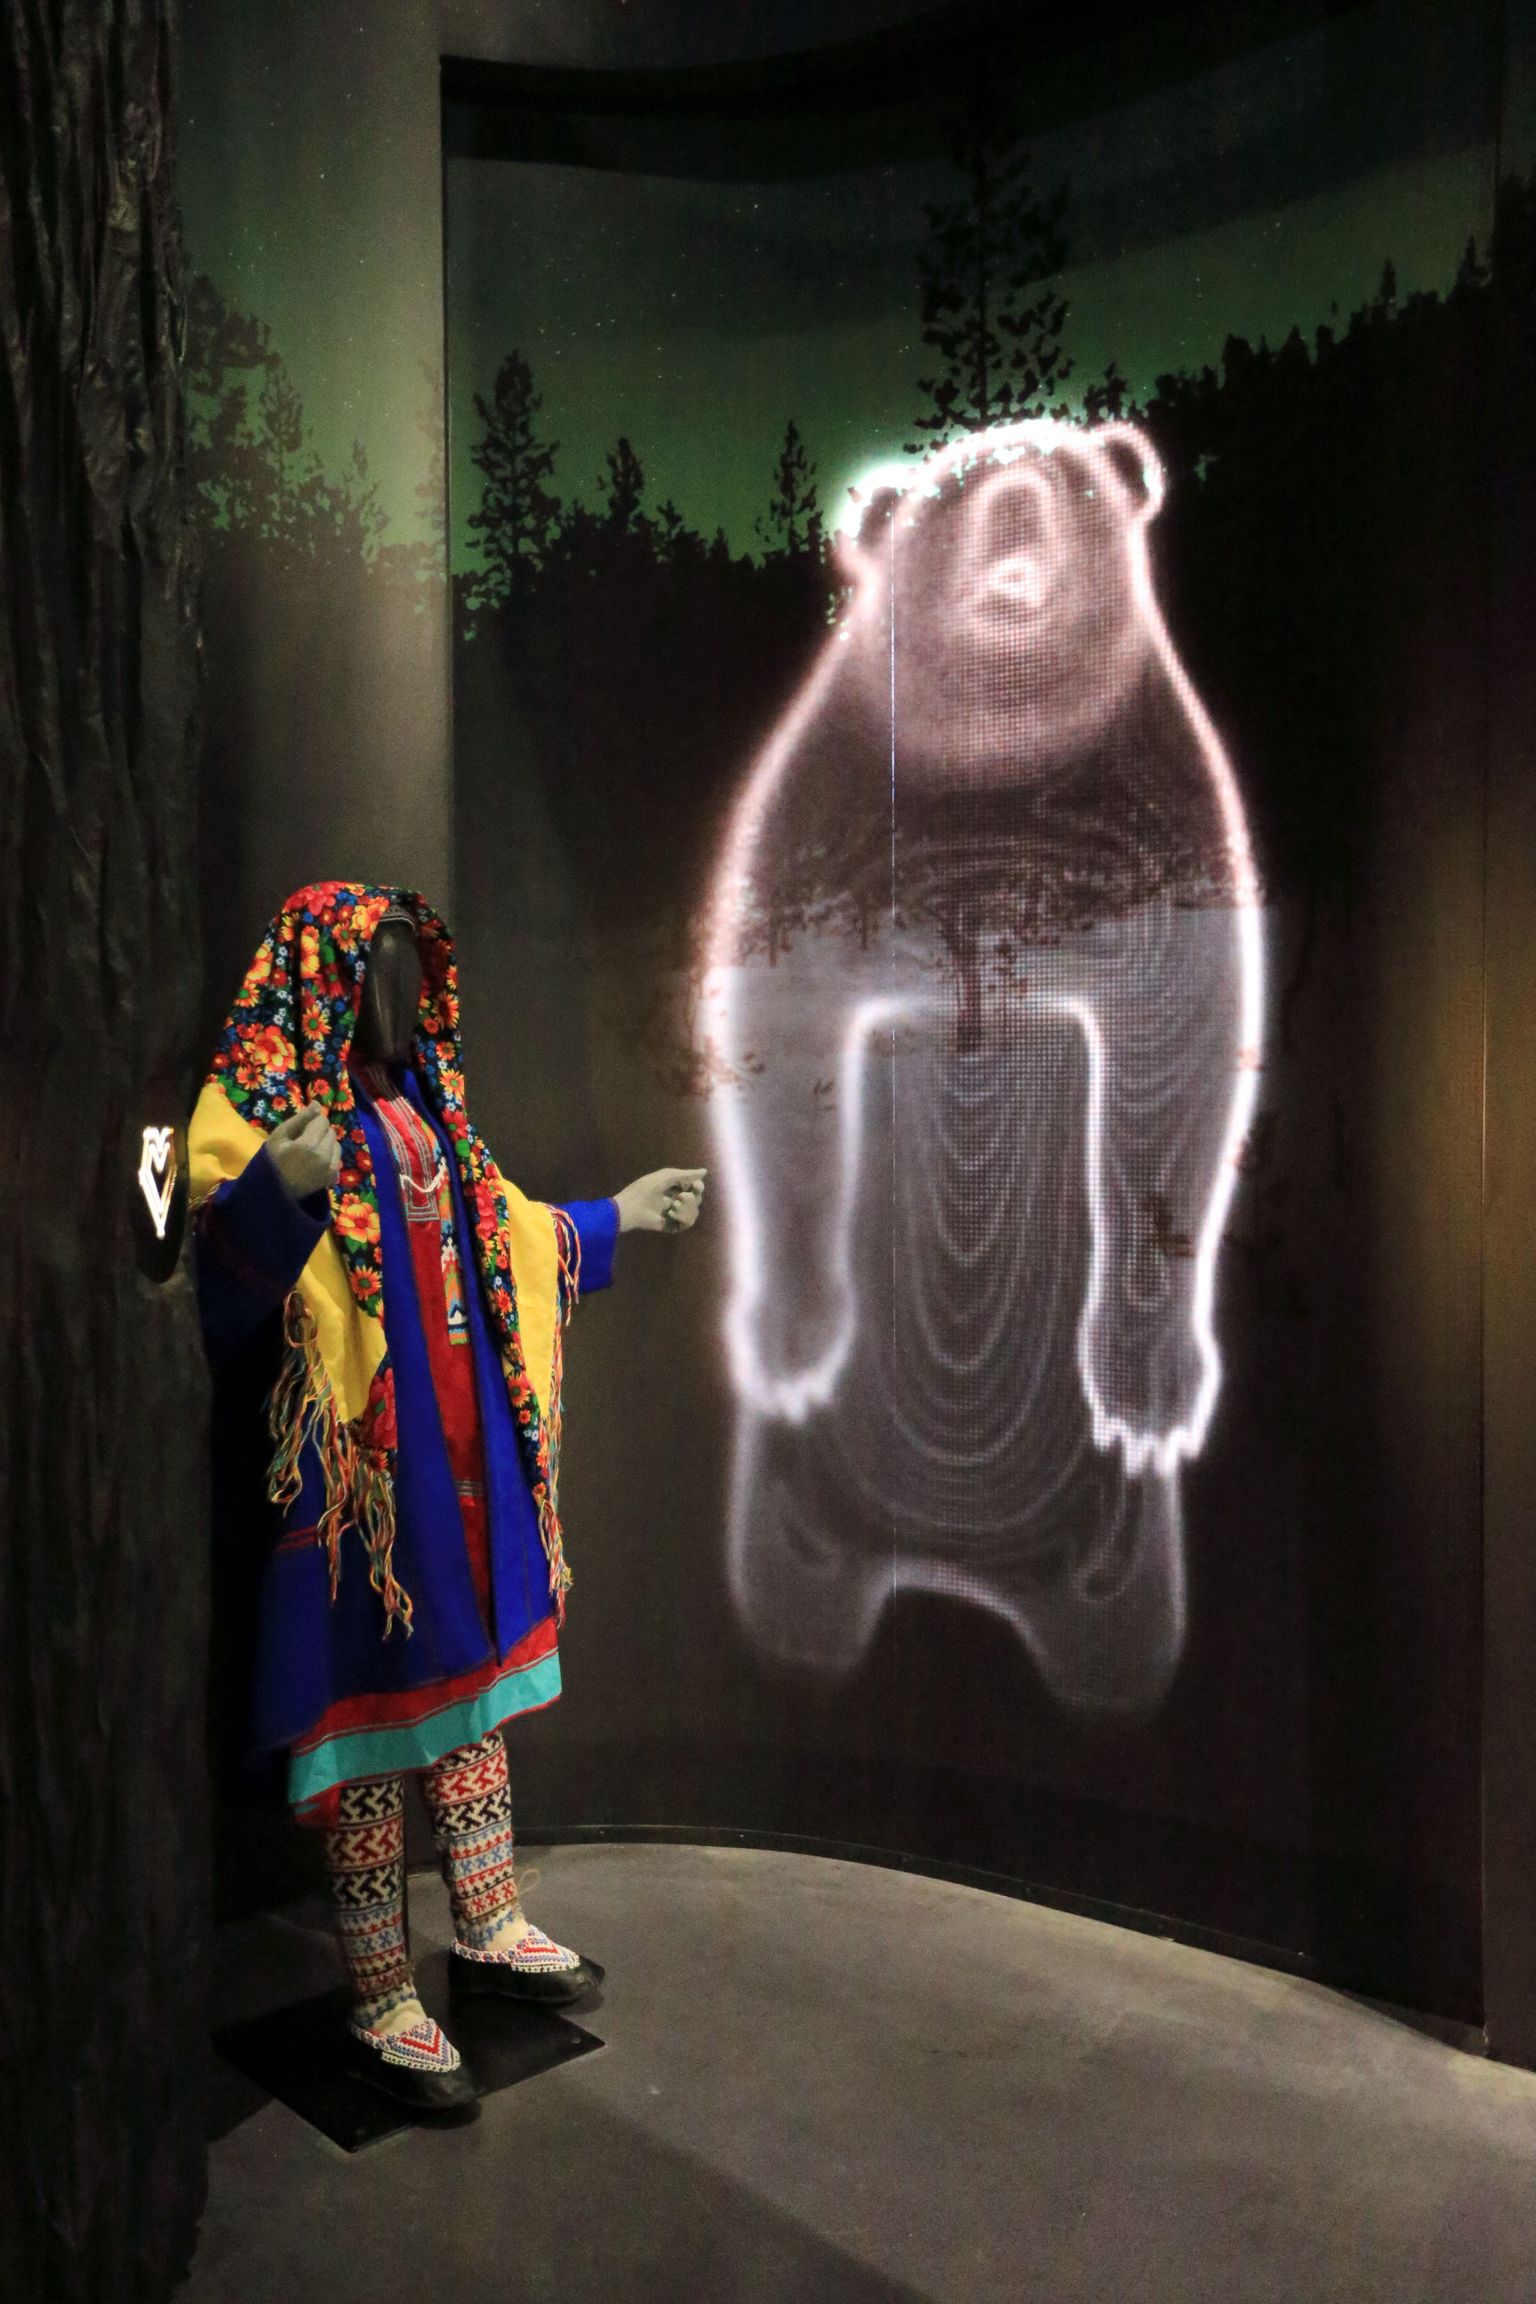 Eesti rahva muuseumis saab näha ka hantide testi, kas pruut peiule sobib. Valiku tegi karu.